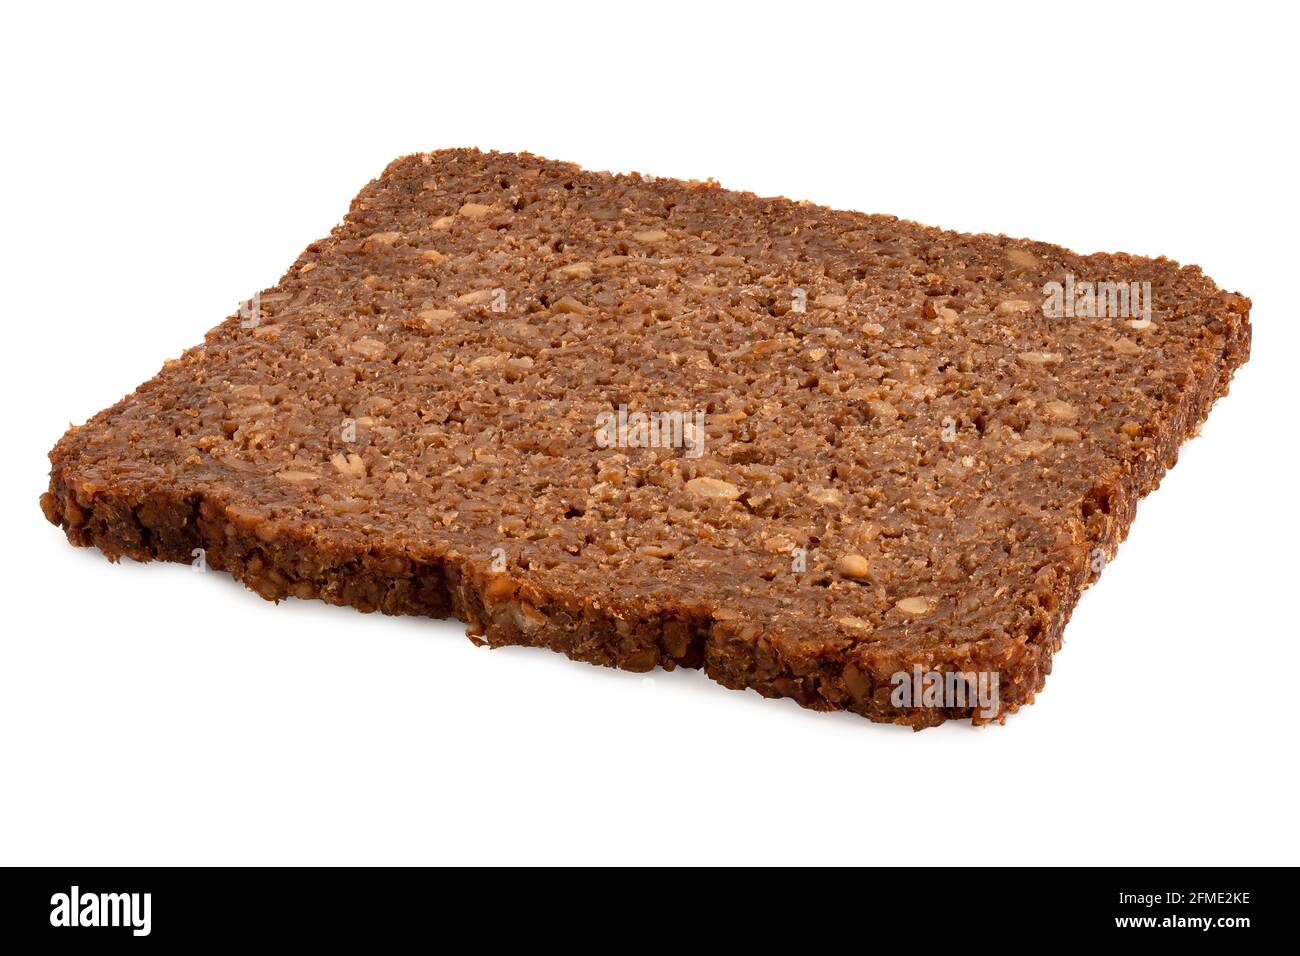 Rebanada de pan alemán de la salud con semillas de girasol aisladas en blanco. Foto de stock